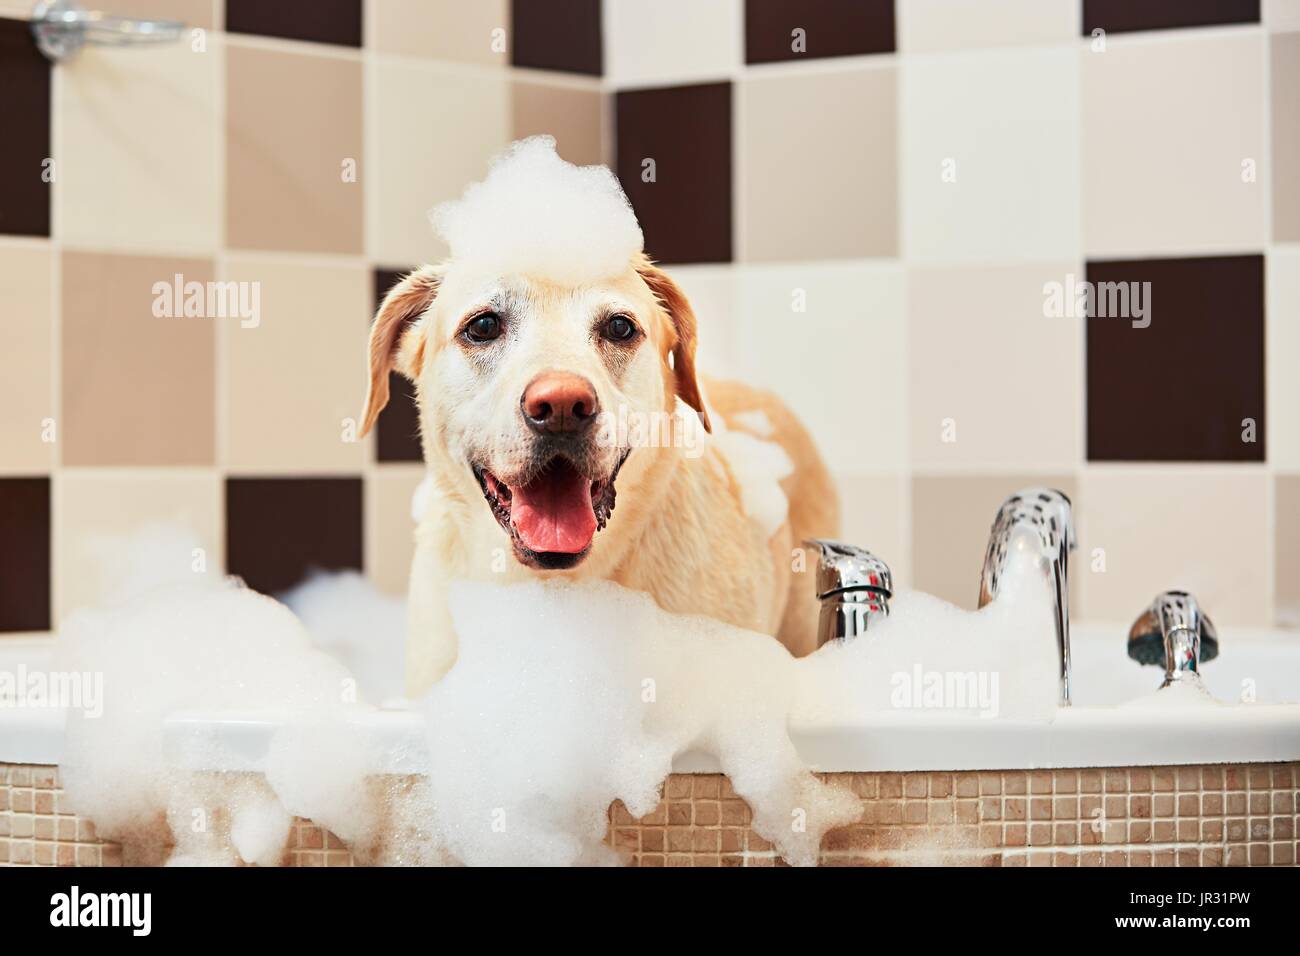 Echelle de la yellow labrador retriever. Bonheur chien prenant un bain moussant. Banque D'Images